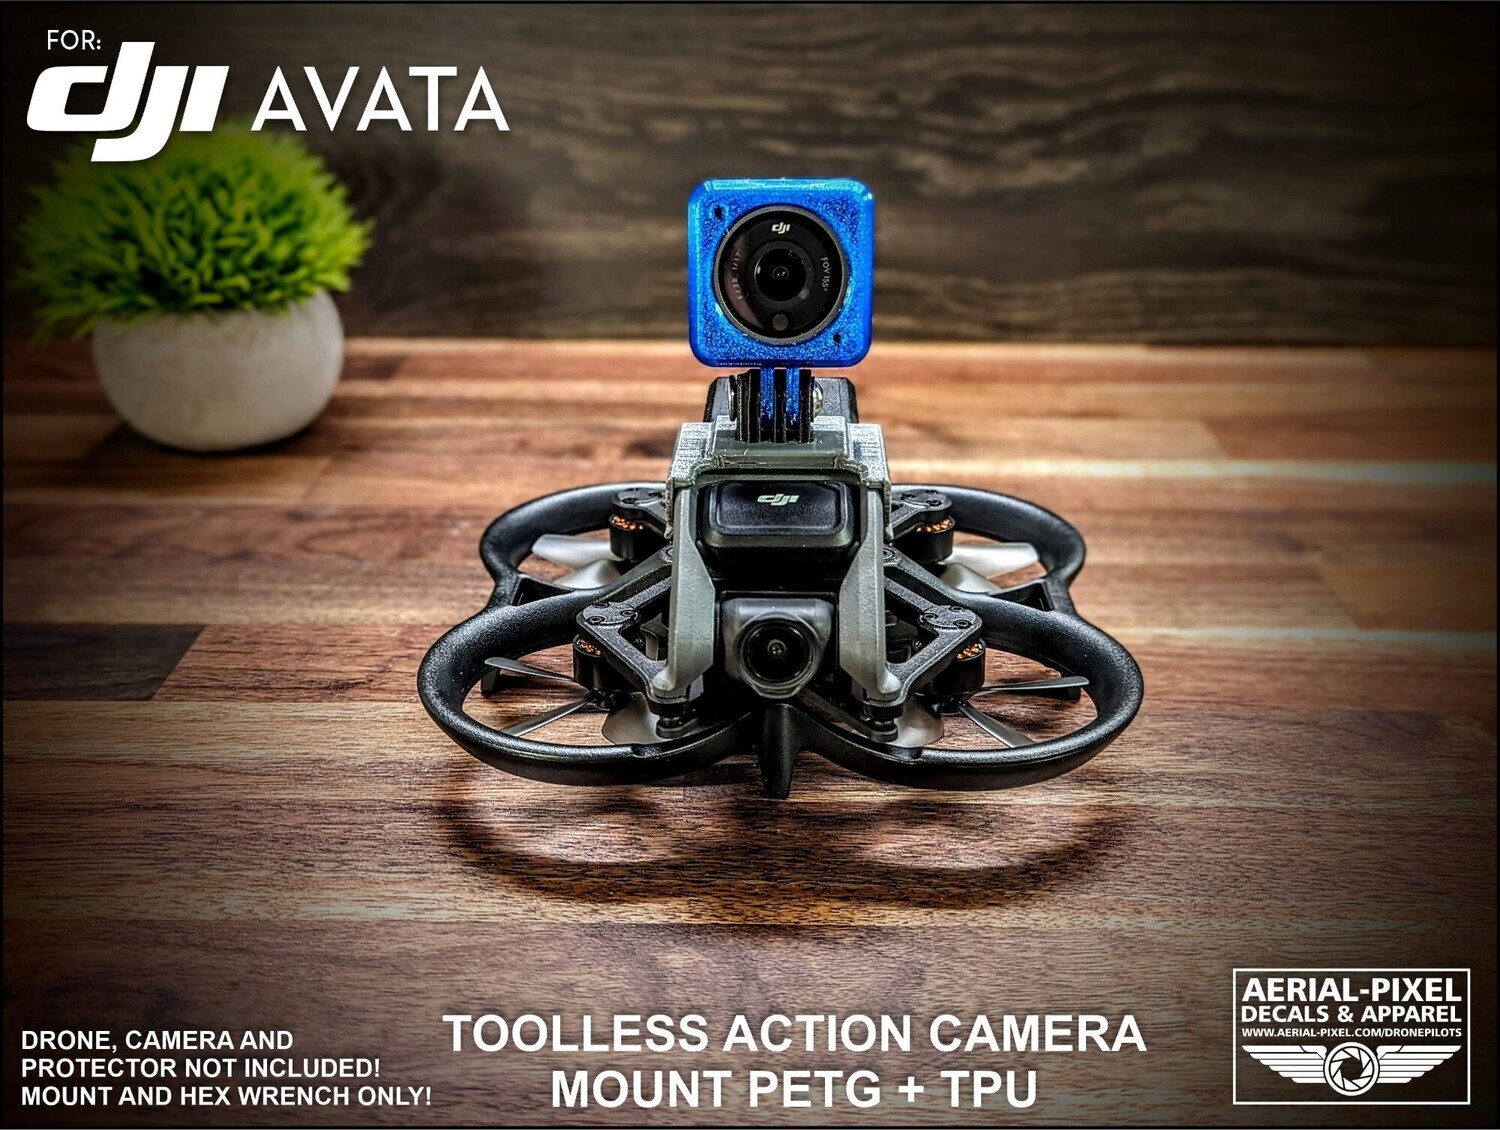 DJI AVATA Toolless GoPro Action Camera Mount